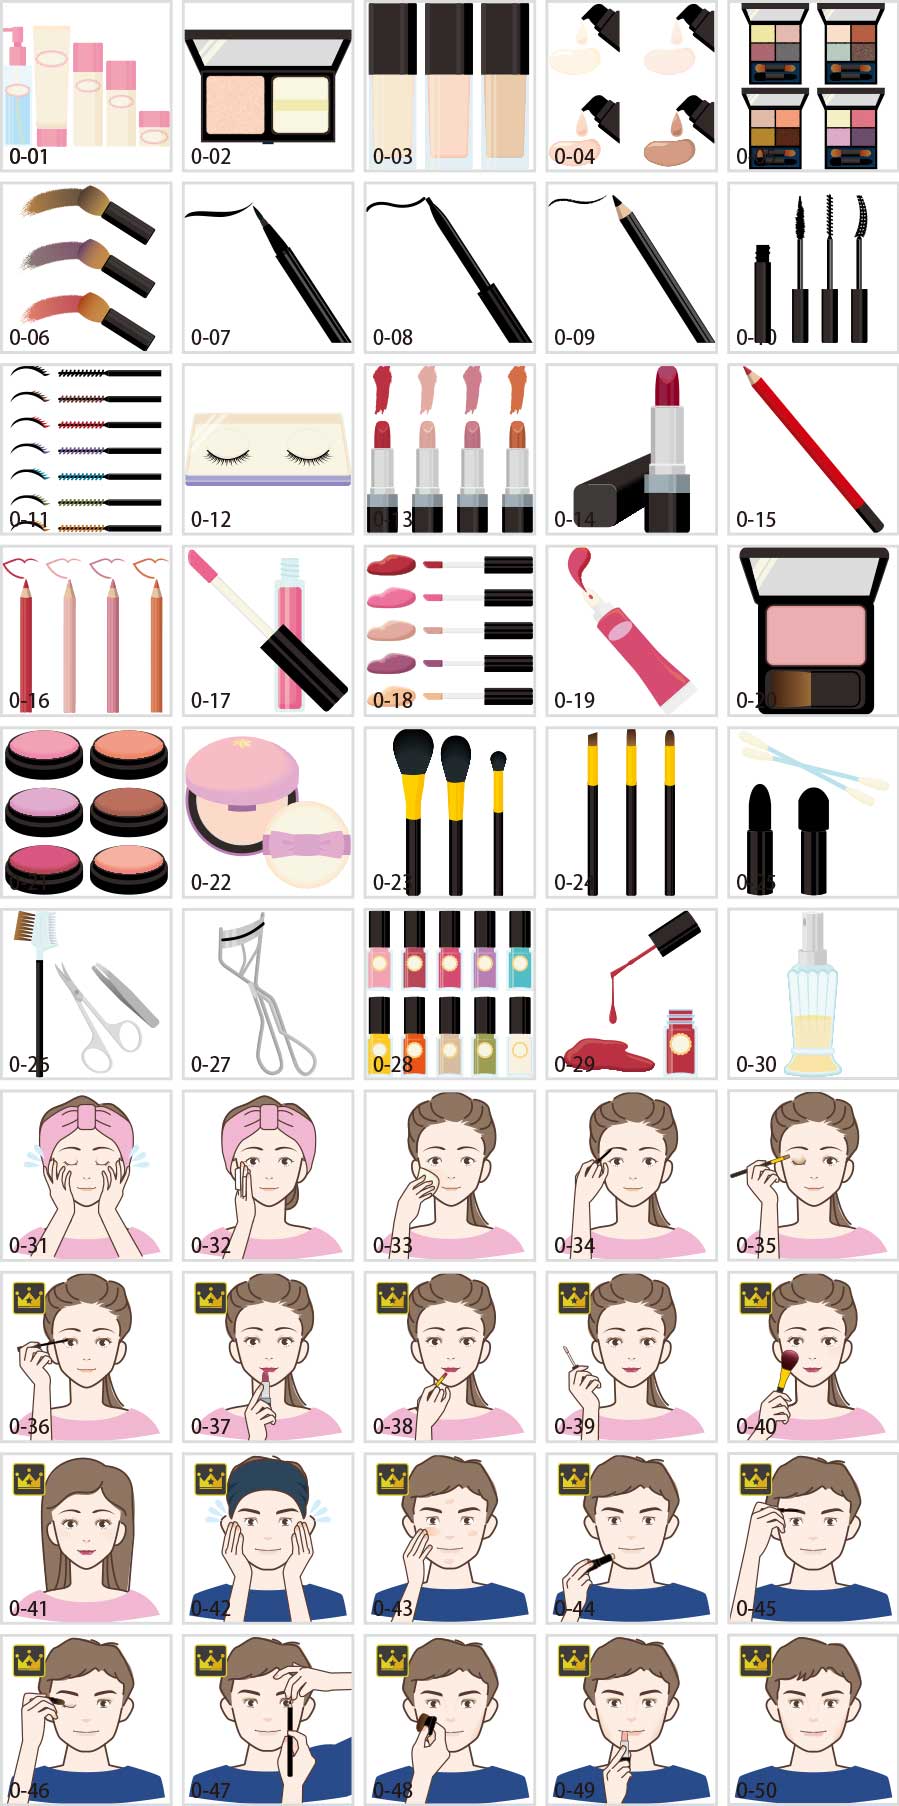 Makeup illustration